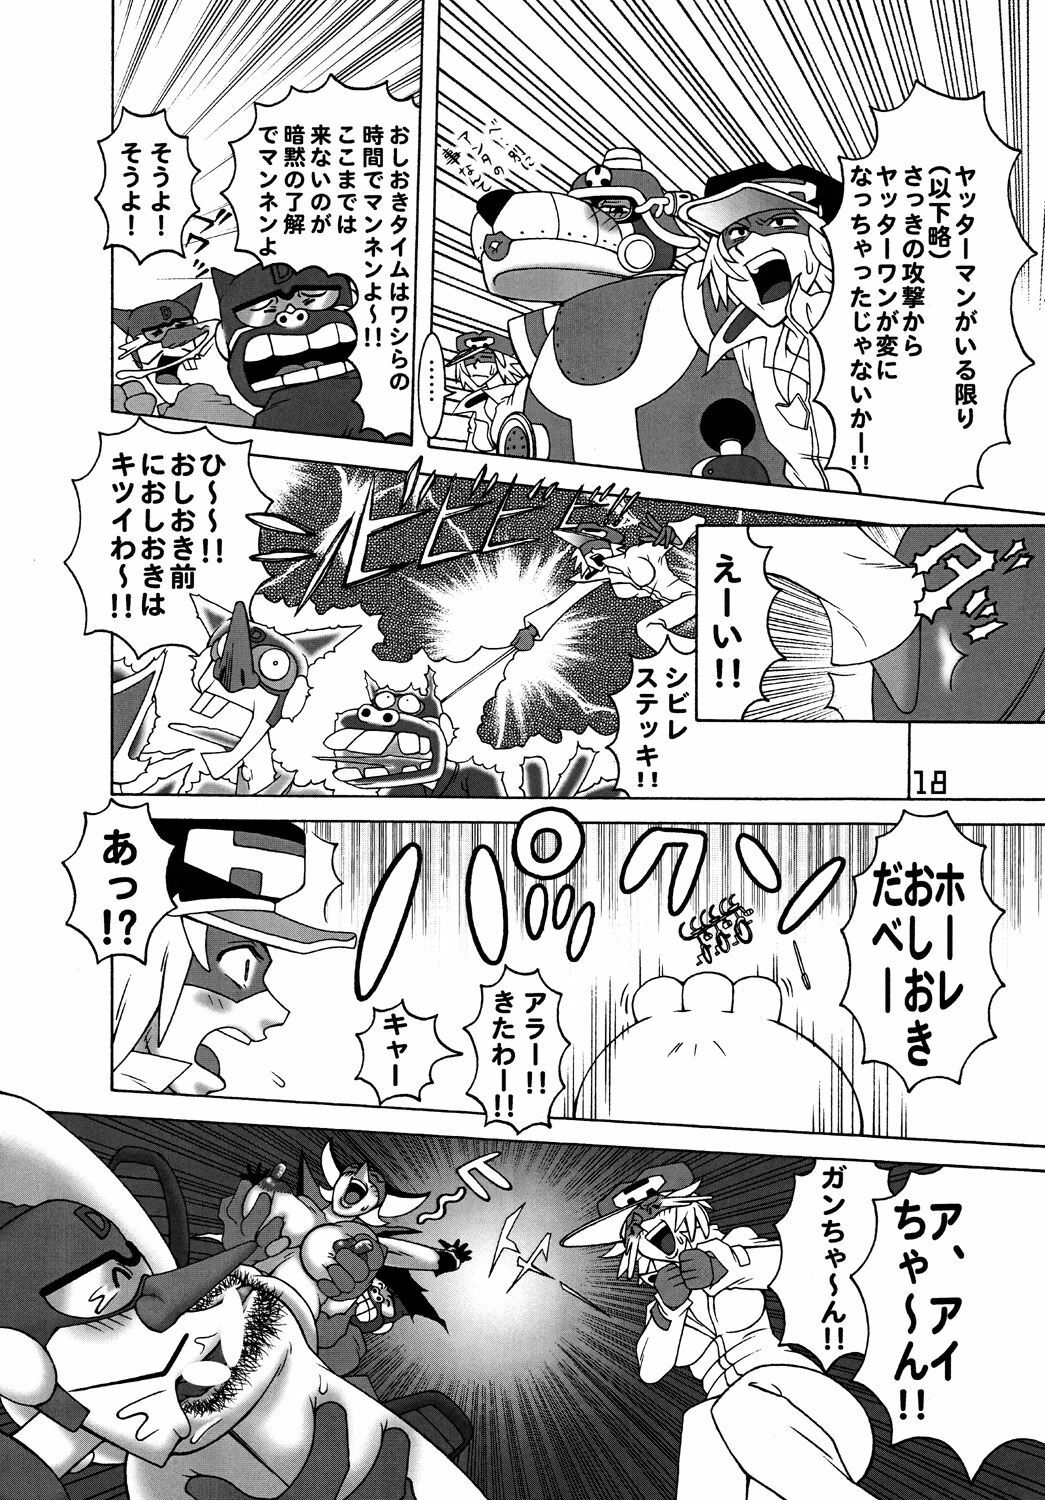 [DYNAMITE HONEY] Tatsunoko Dynamite page 17 full